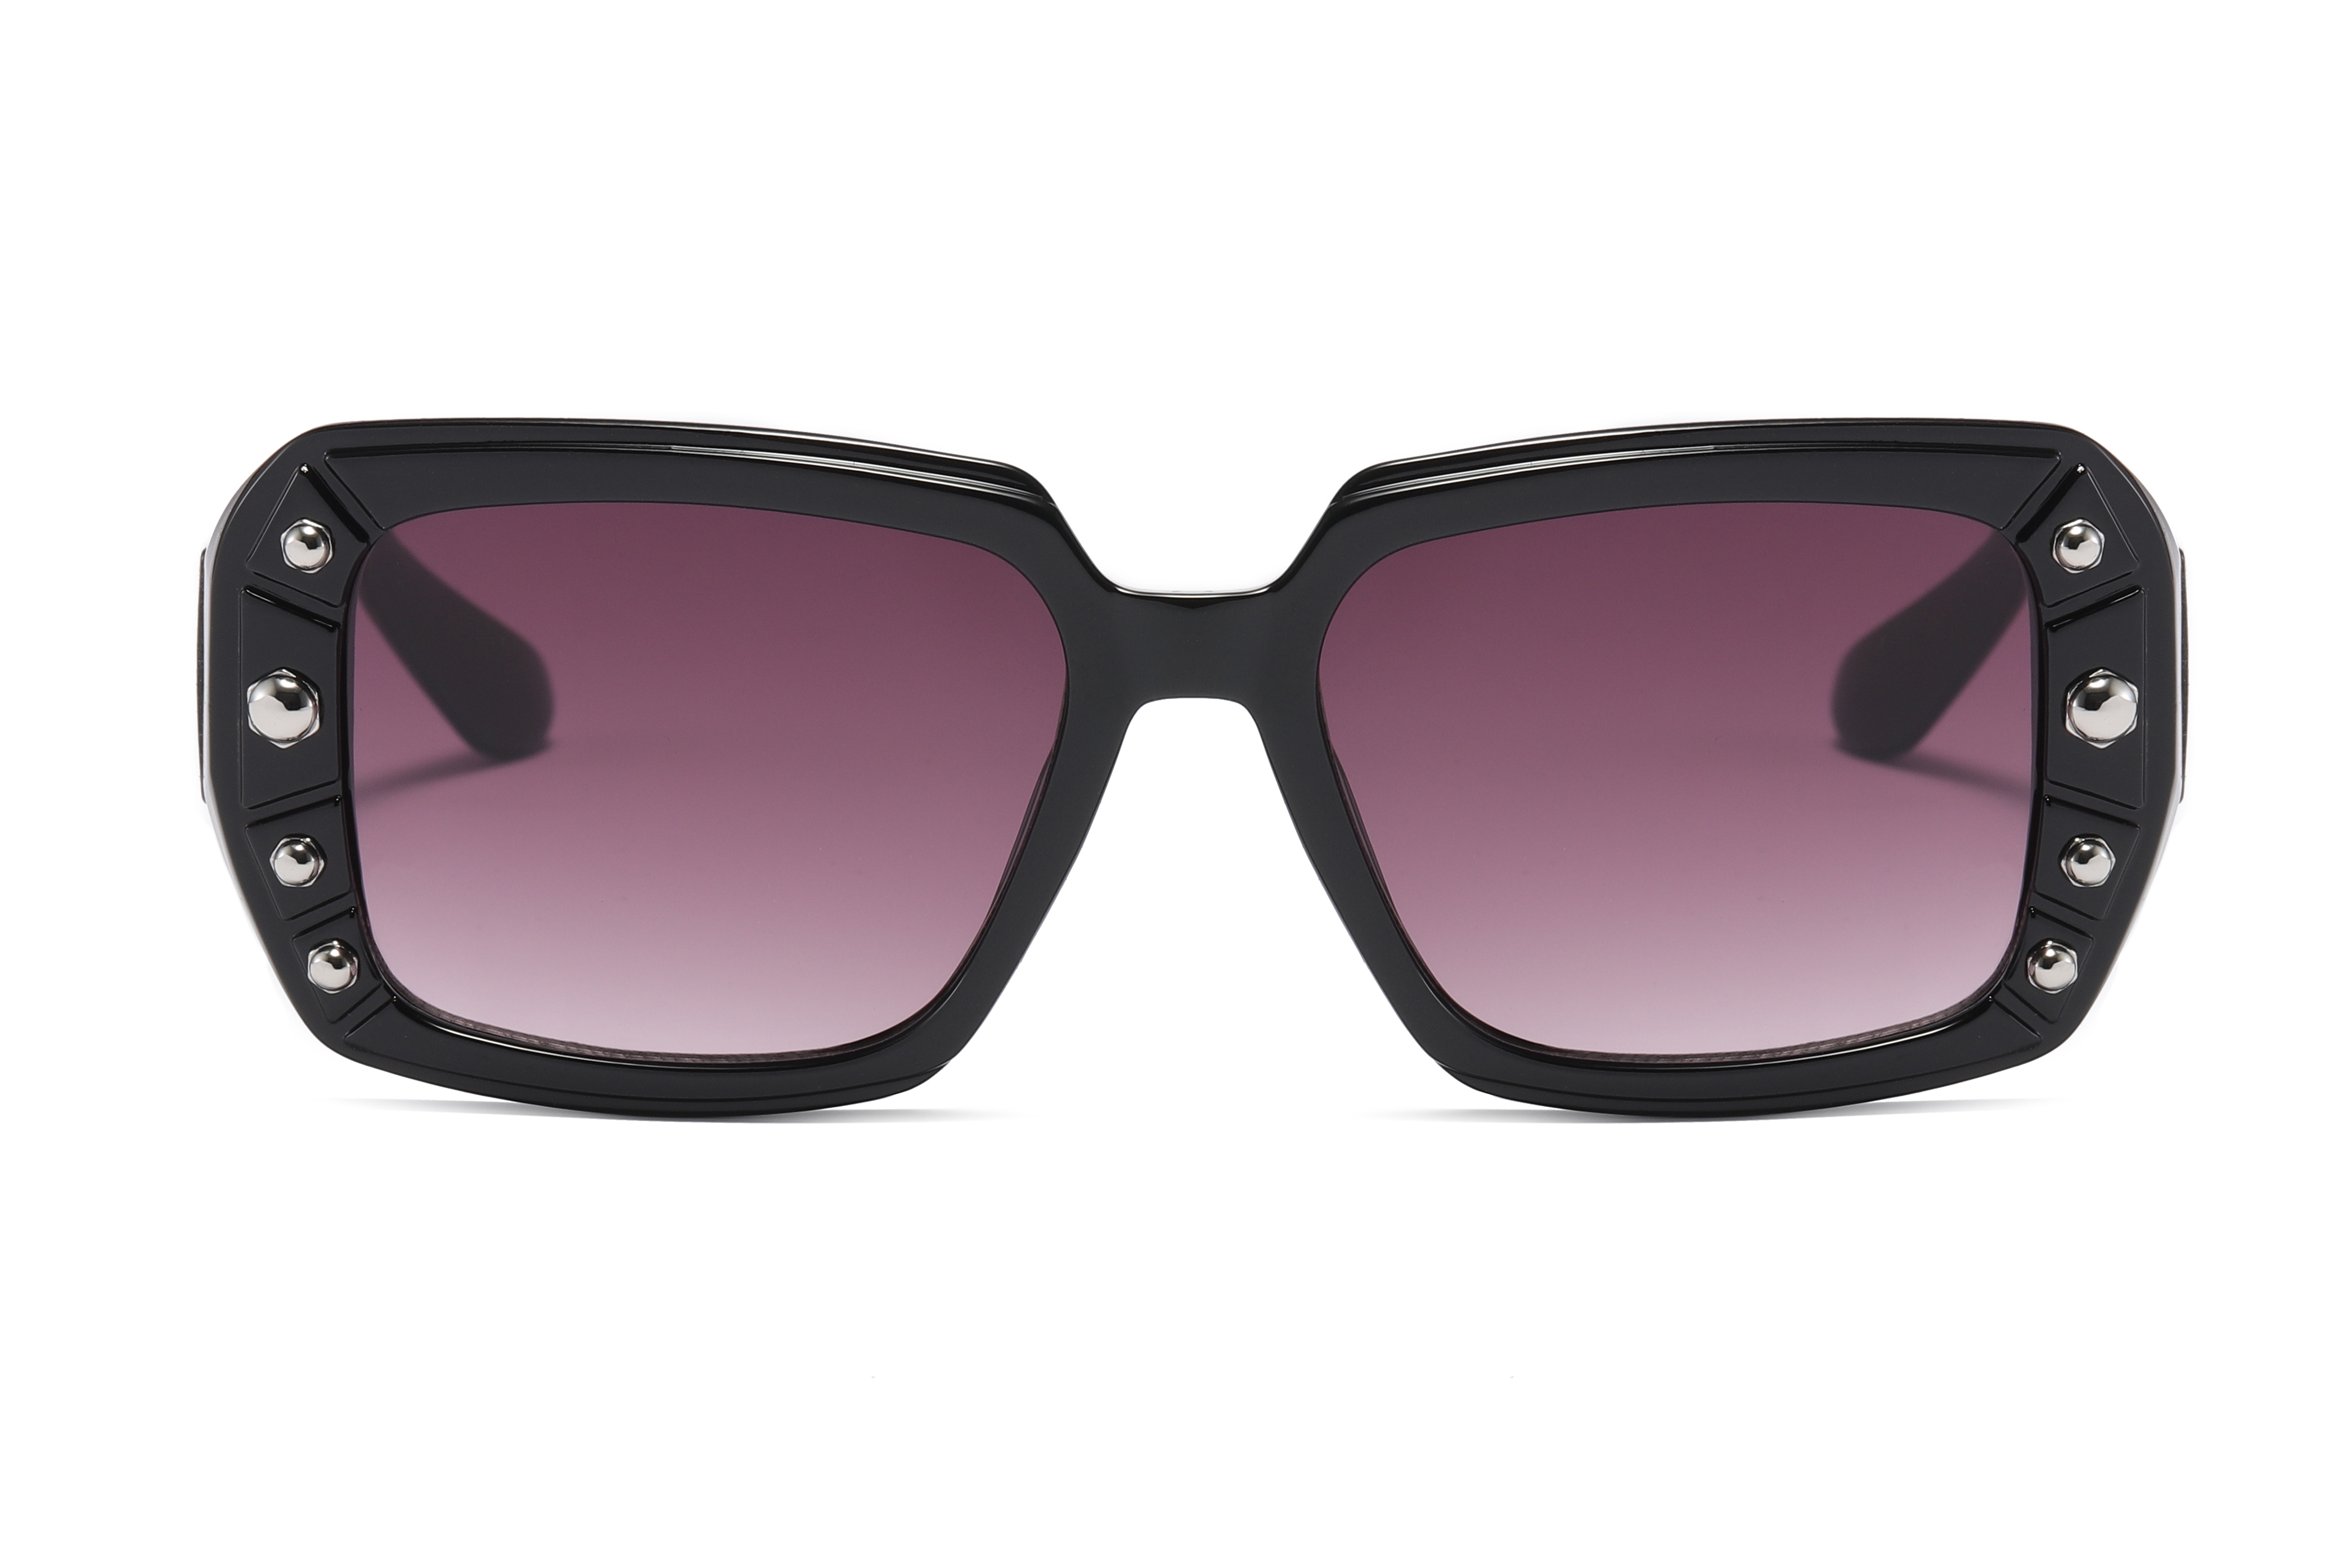 Designed Rectangle Fashion Sunglasses 81595